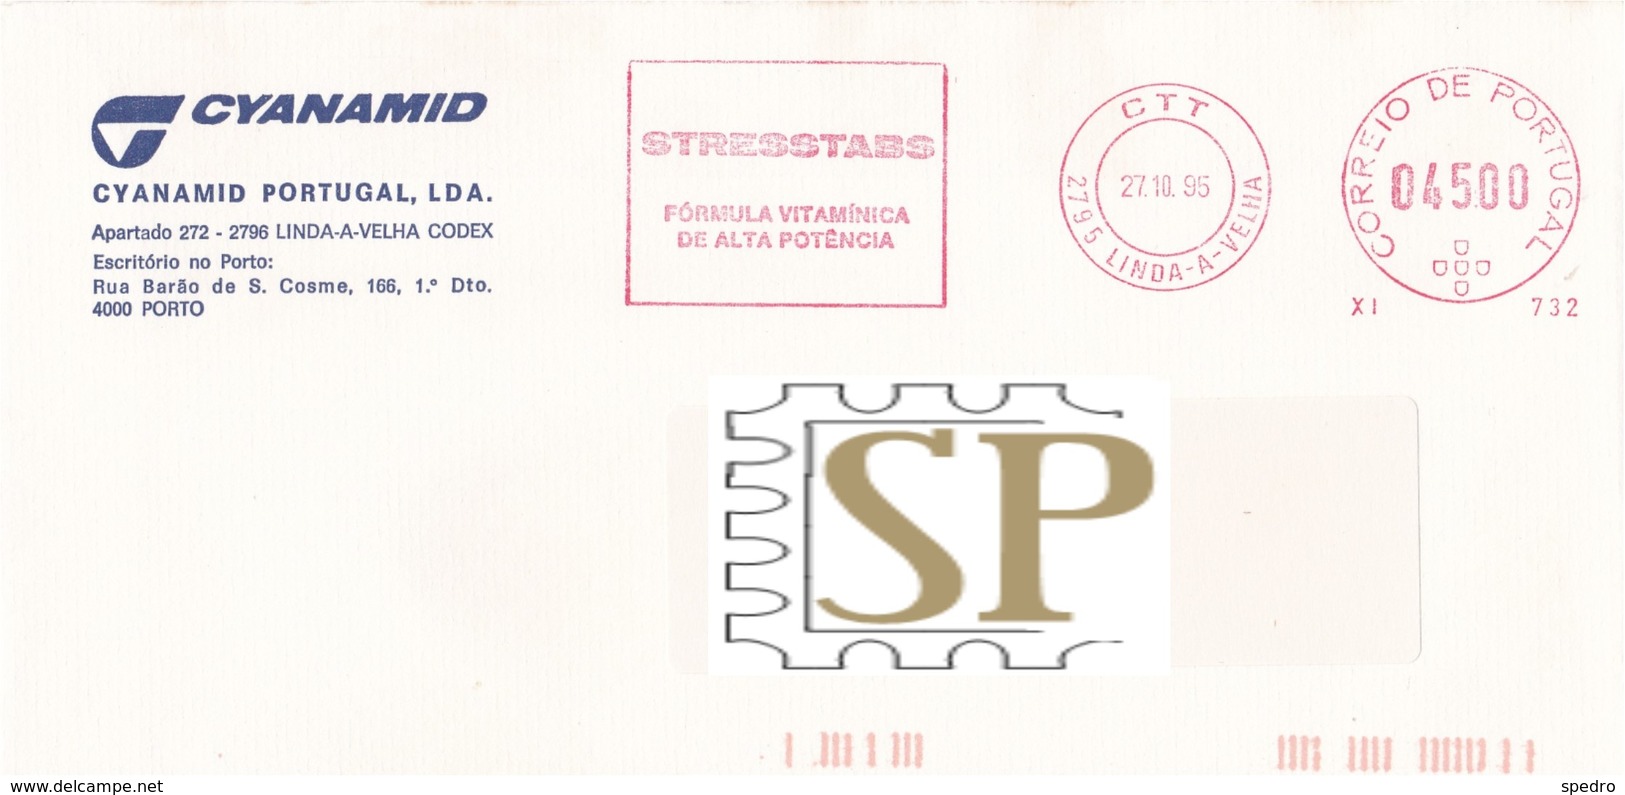 Portugal 1995 Franquia Mecânica Linda-a-Velha Ema Mechanical Franchise STRESSTABS Medicine STRESS Médicaments Postmark - Médecine